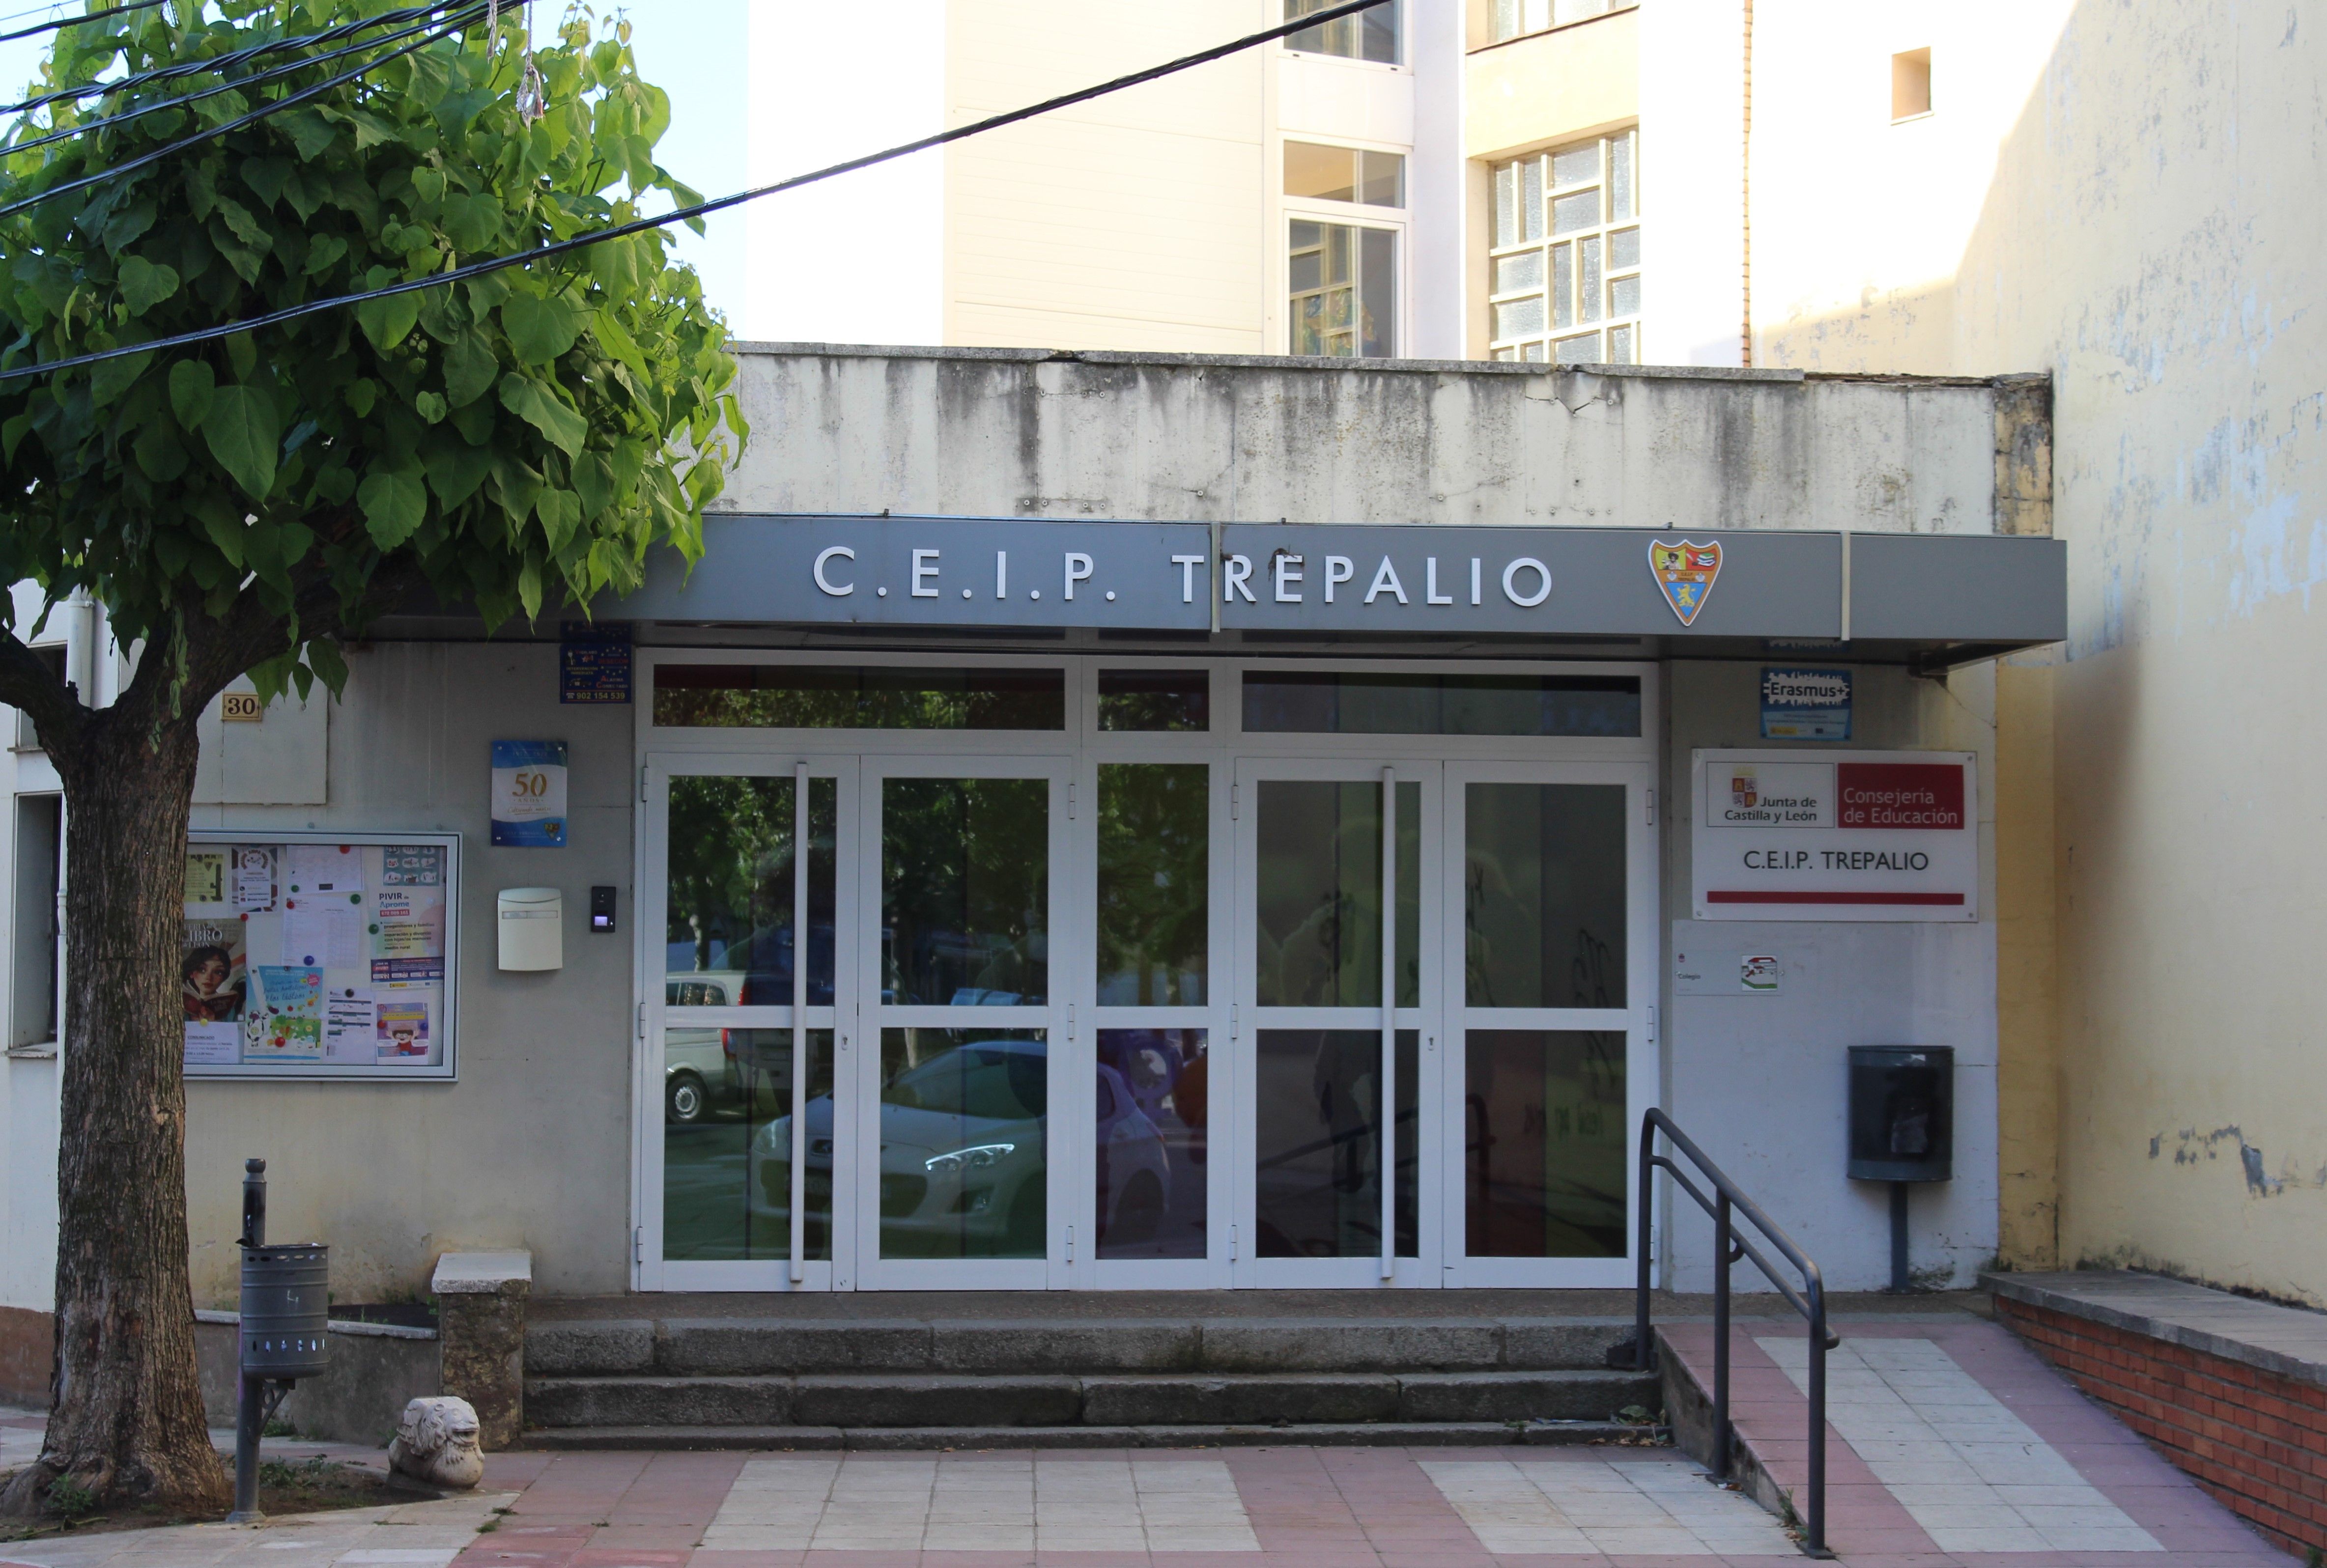 El Ceip Trepalio sería uno de los colegios beneficiarios del mantenimiento. | L.N.C.